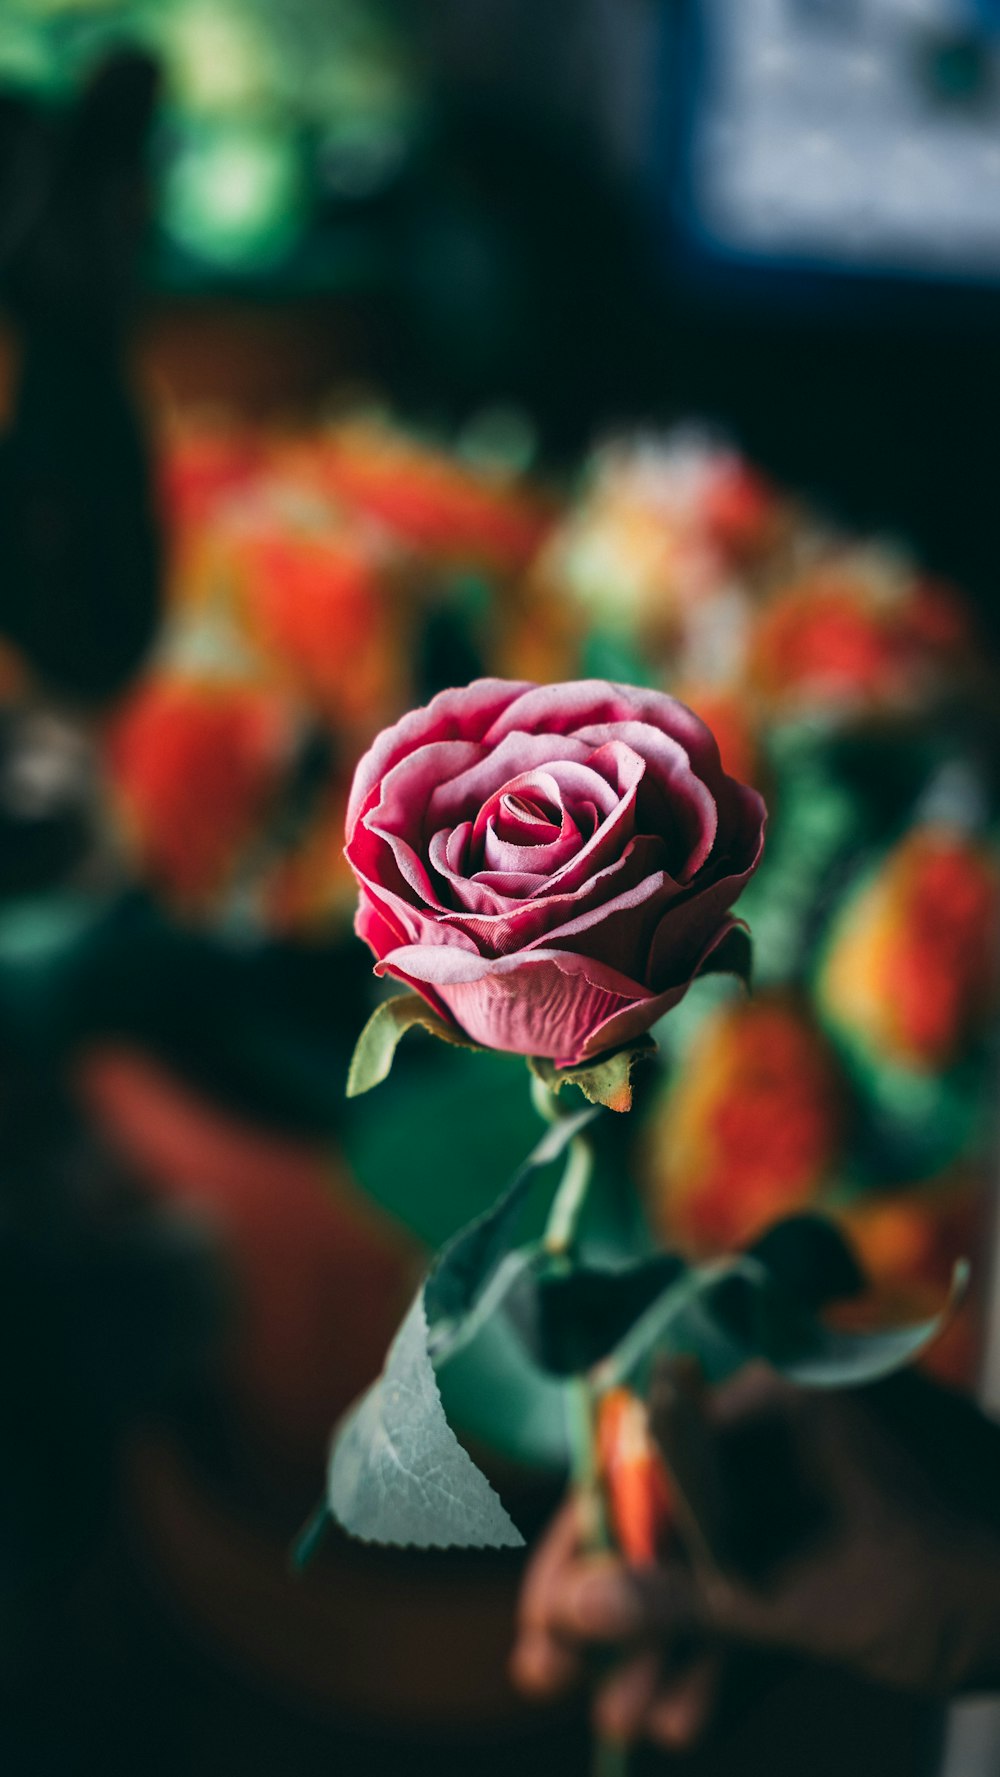 咲き誇る赤いバラのクローズアップ写真